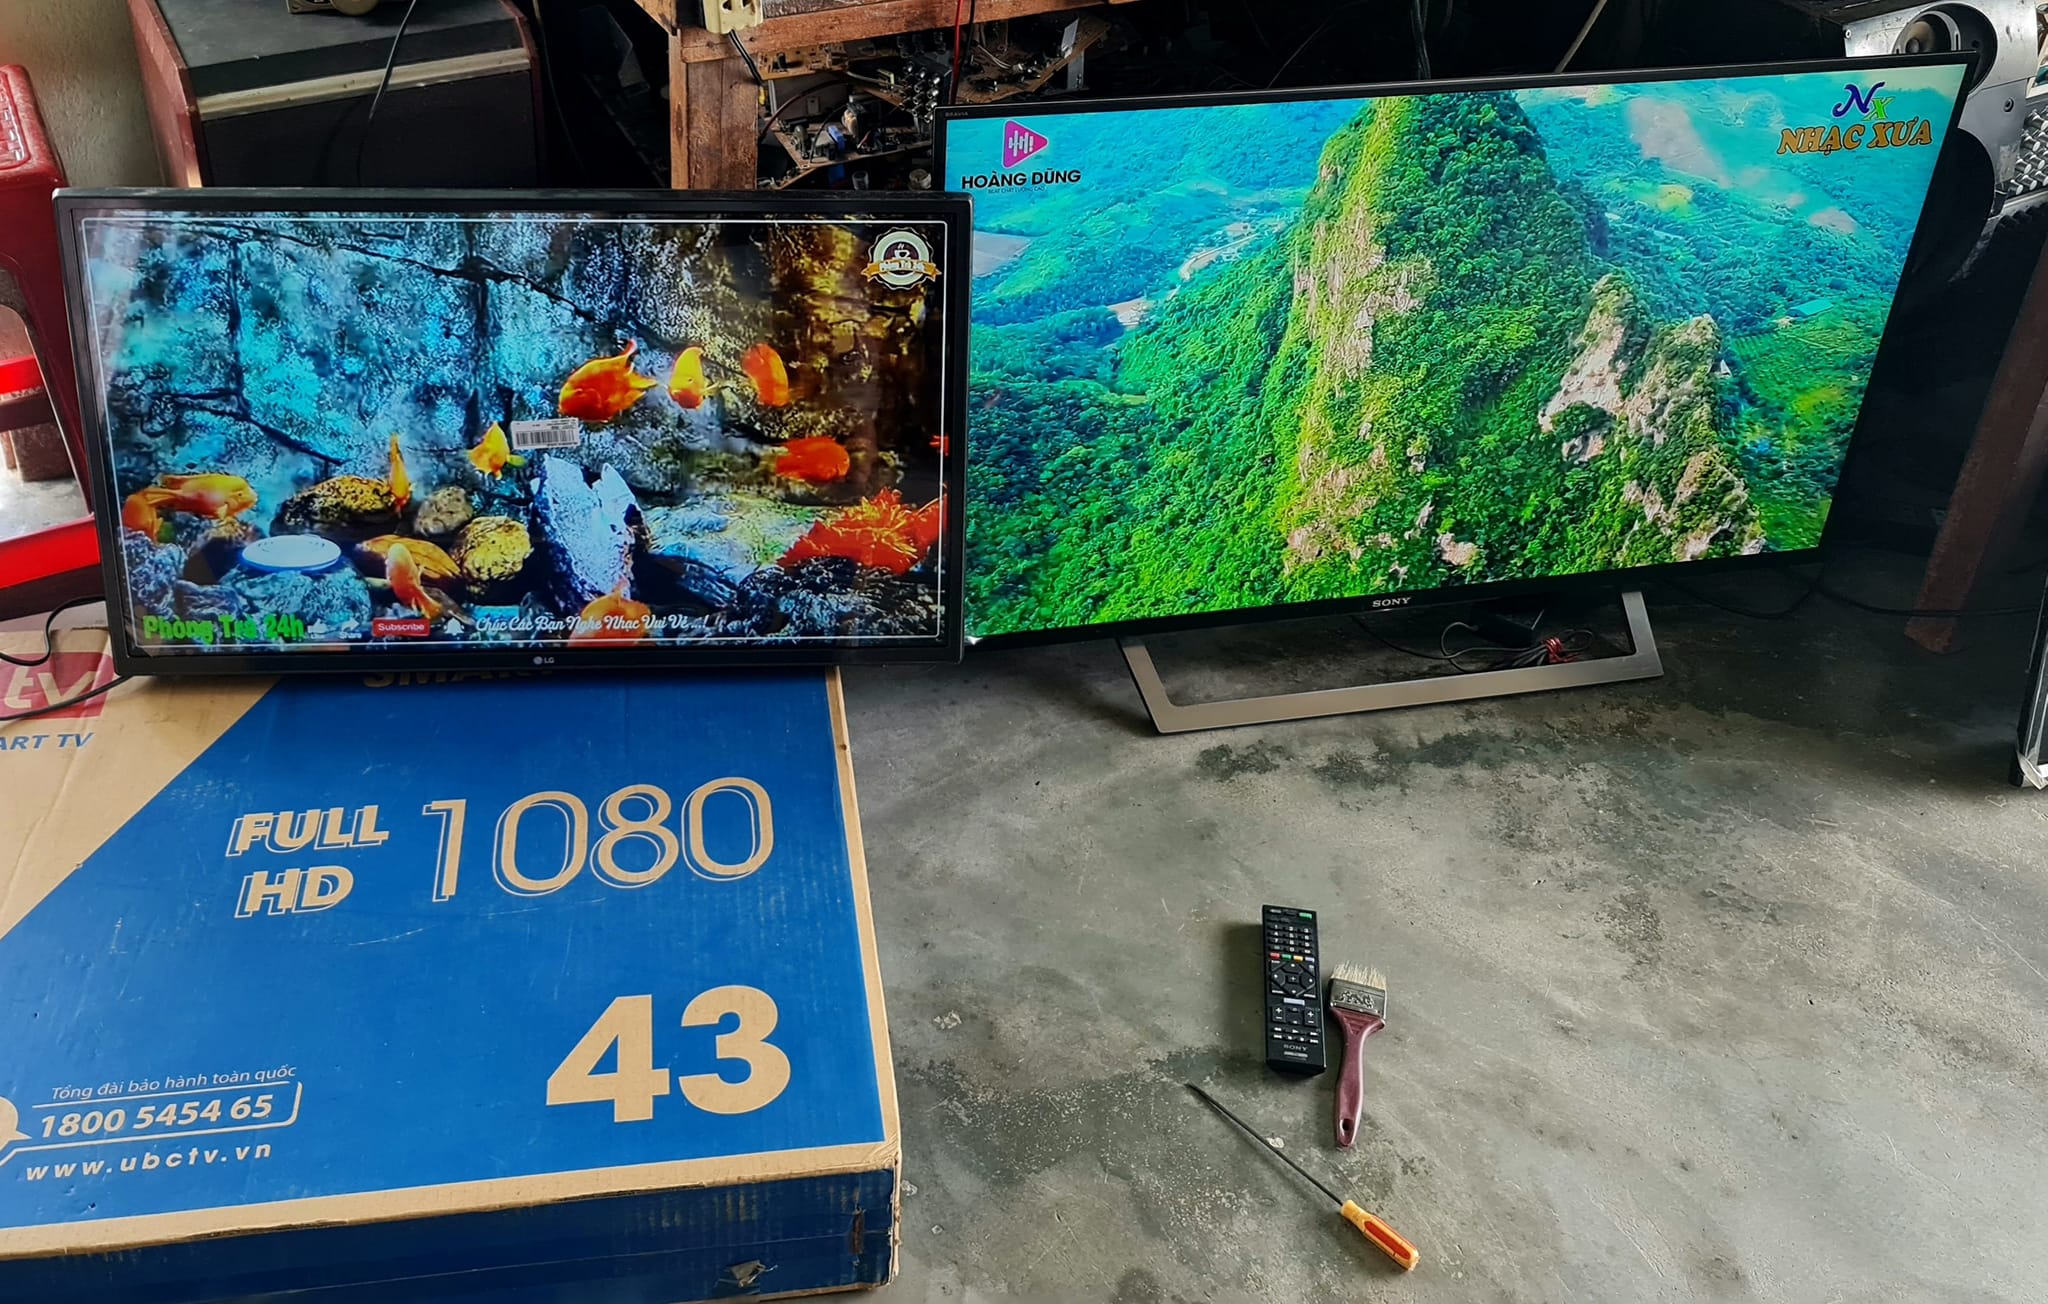 Thu mua Bán tivi cũ giá cao tại Quy Nhơn